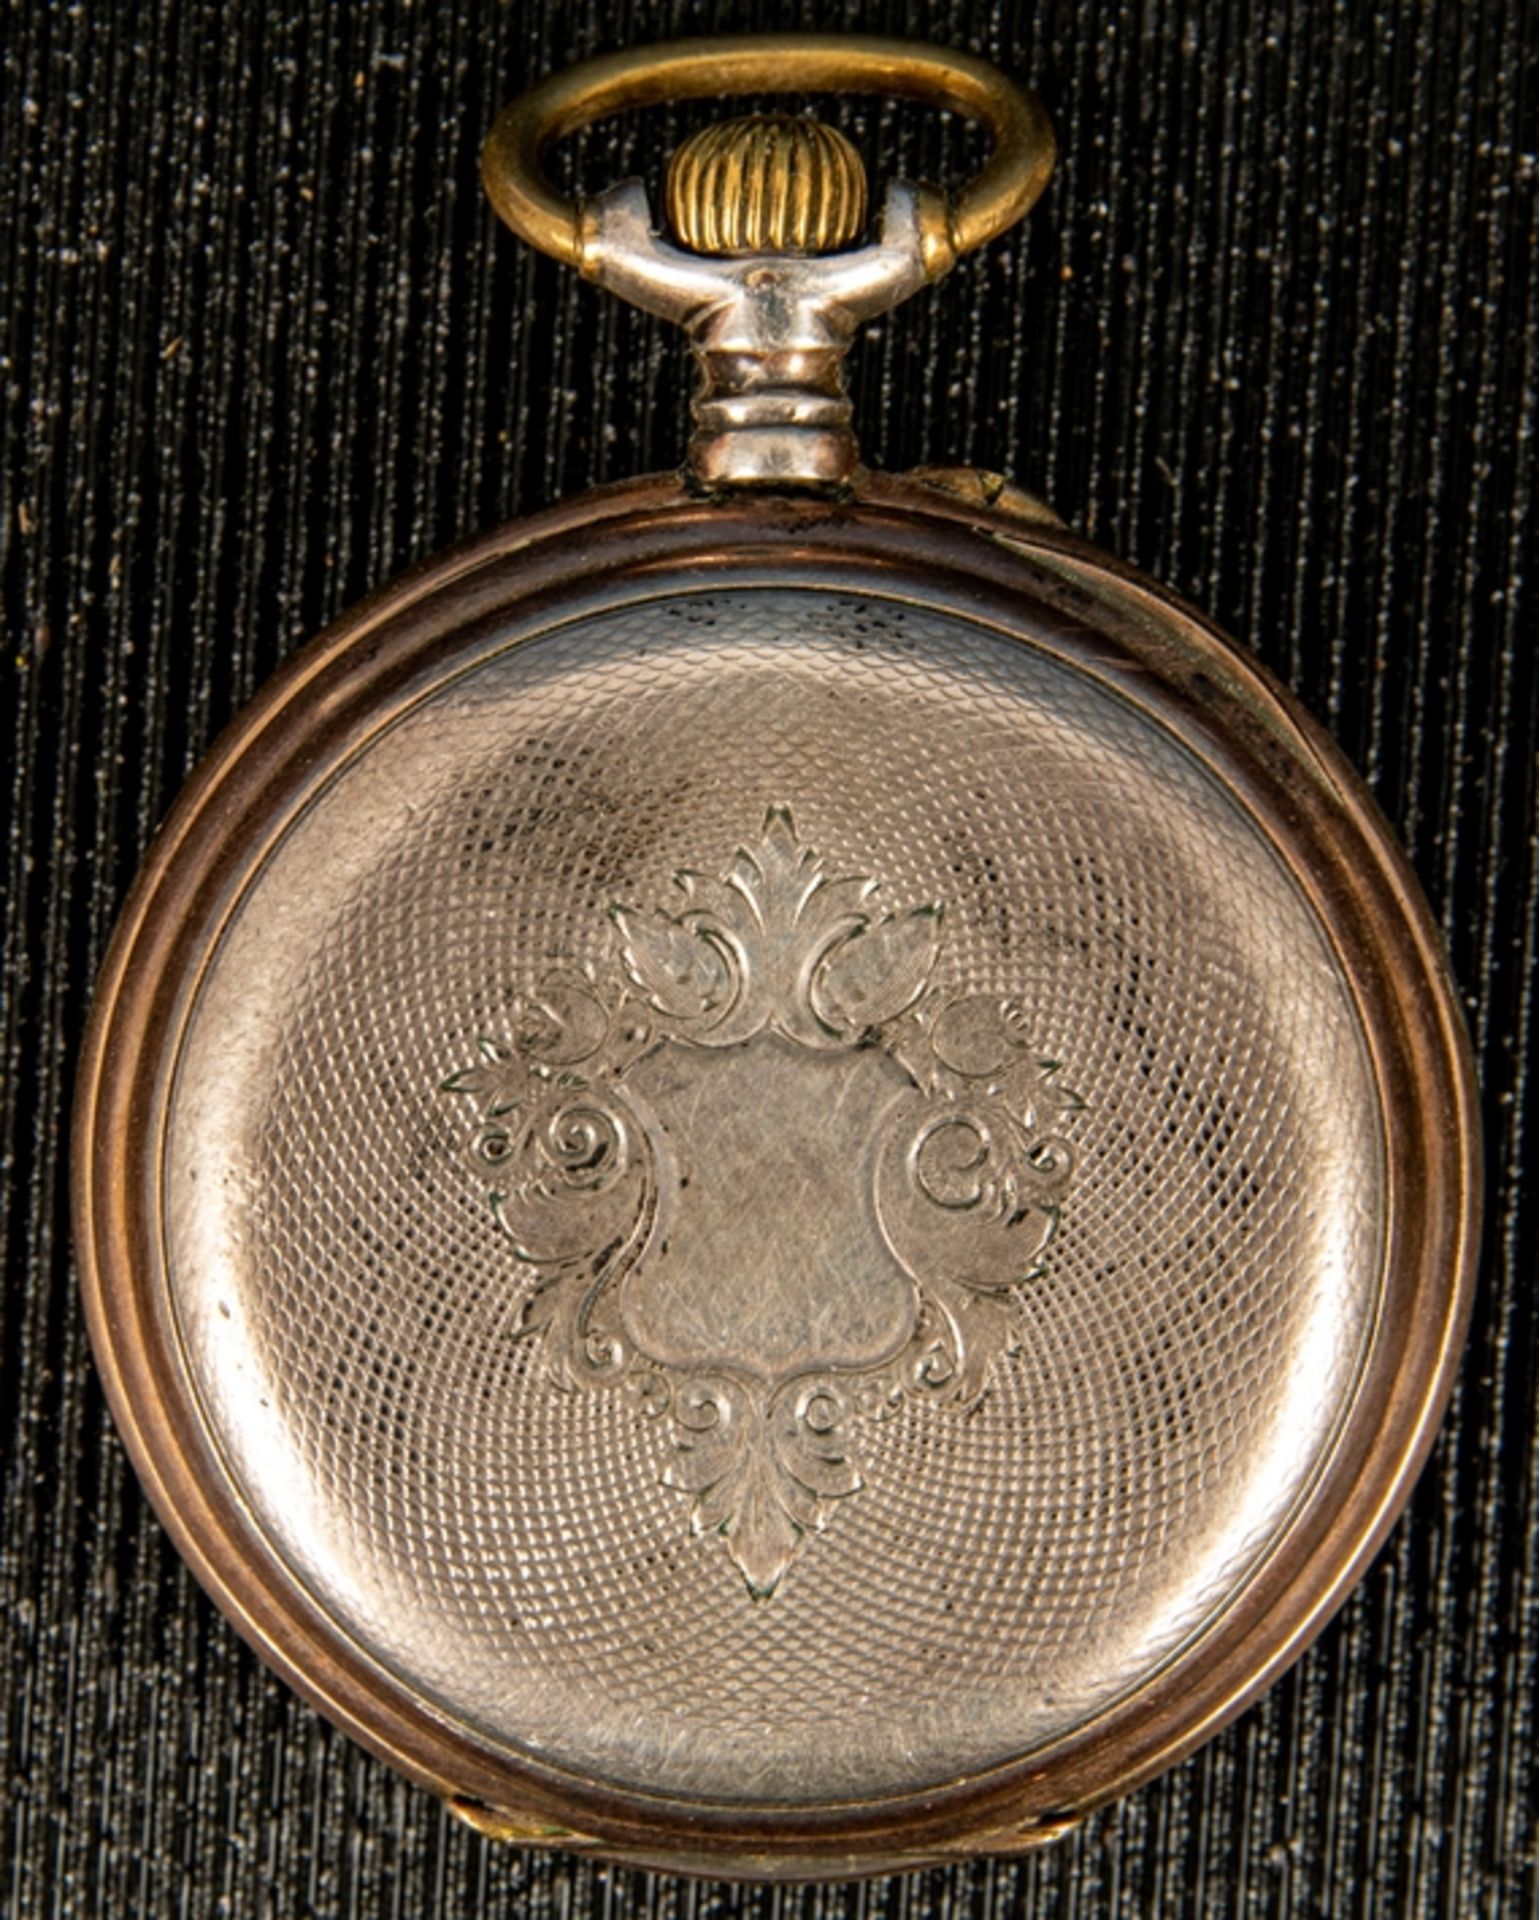 Offene Herrentaschenuhr um 1900/ 20, ungeprüftes Werk mit Handaufzug, läuft an. - Bild 2 aus 6